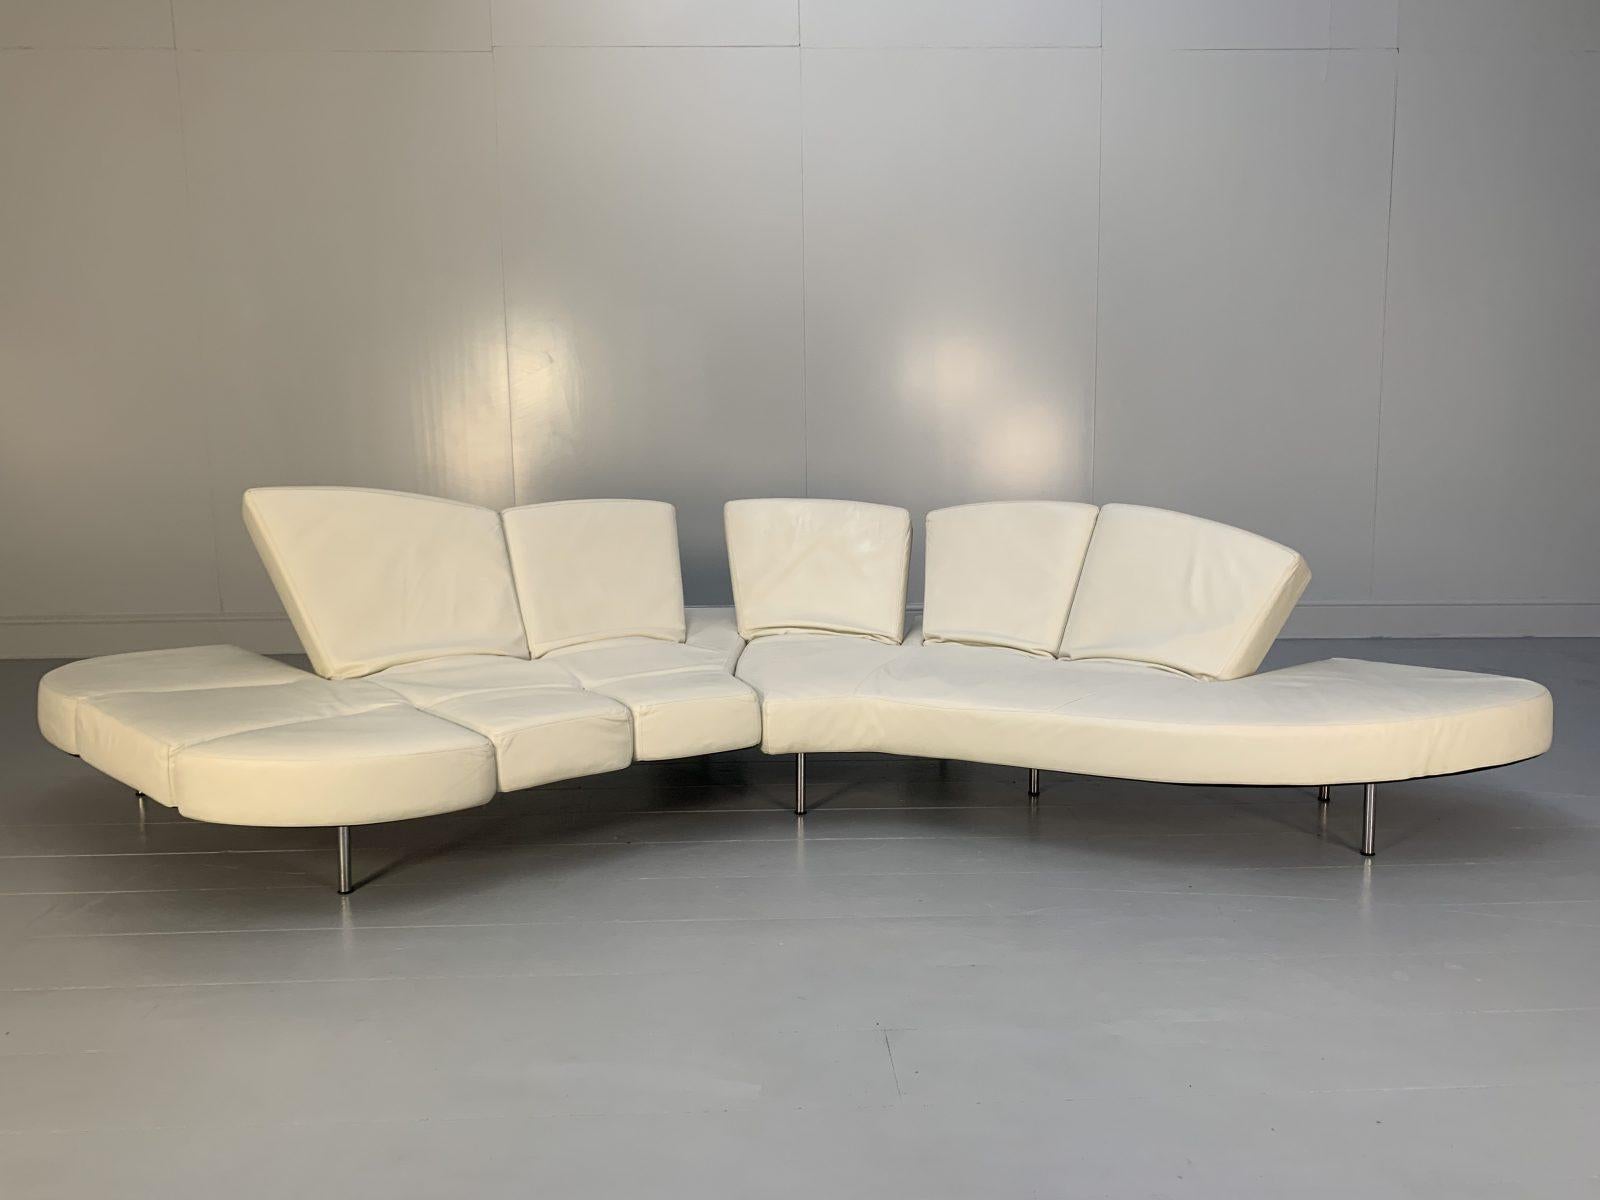 Hallo Freunde, und herzlich willkommen zu einem weiteren unübersehbaren Angebot von Lord Browns Furniture, Großbritanniens führender Quelle für edle Sofas und Stühle.

Das hier angebotene Sofa 